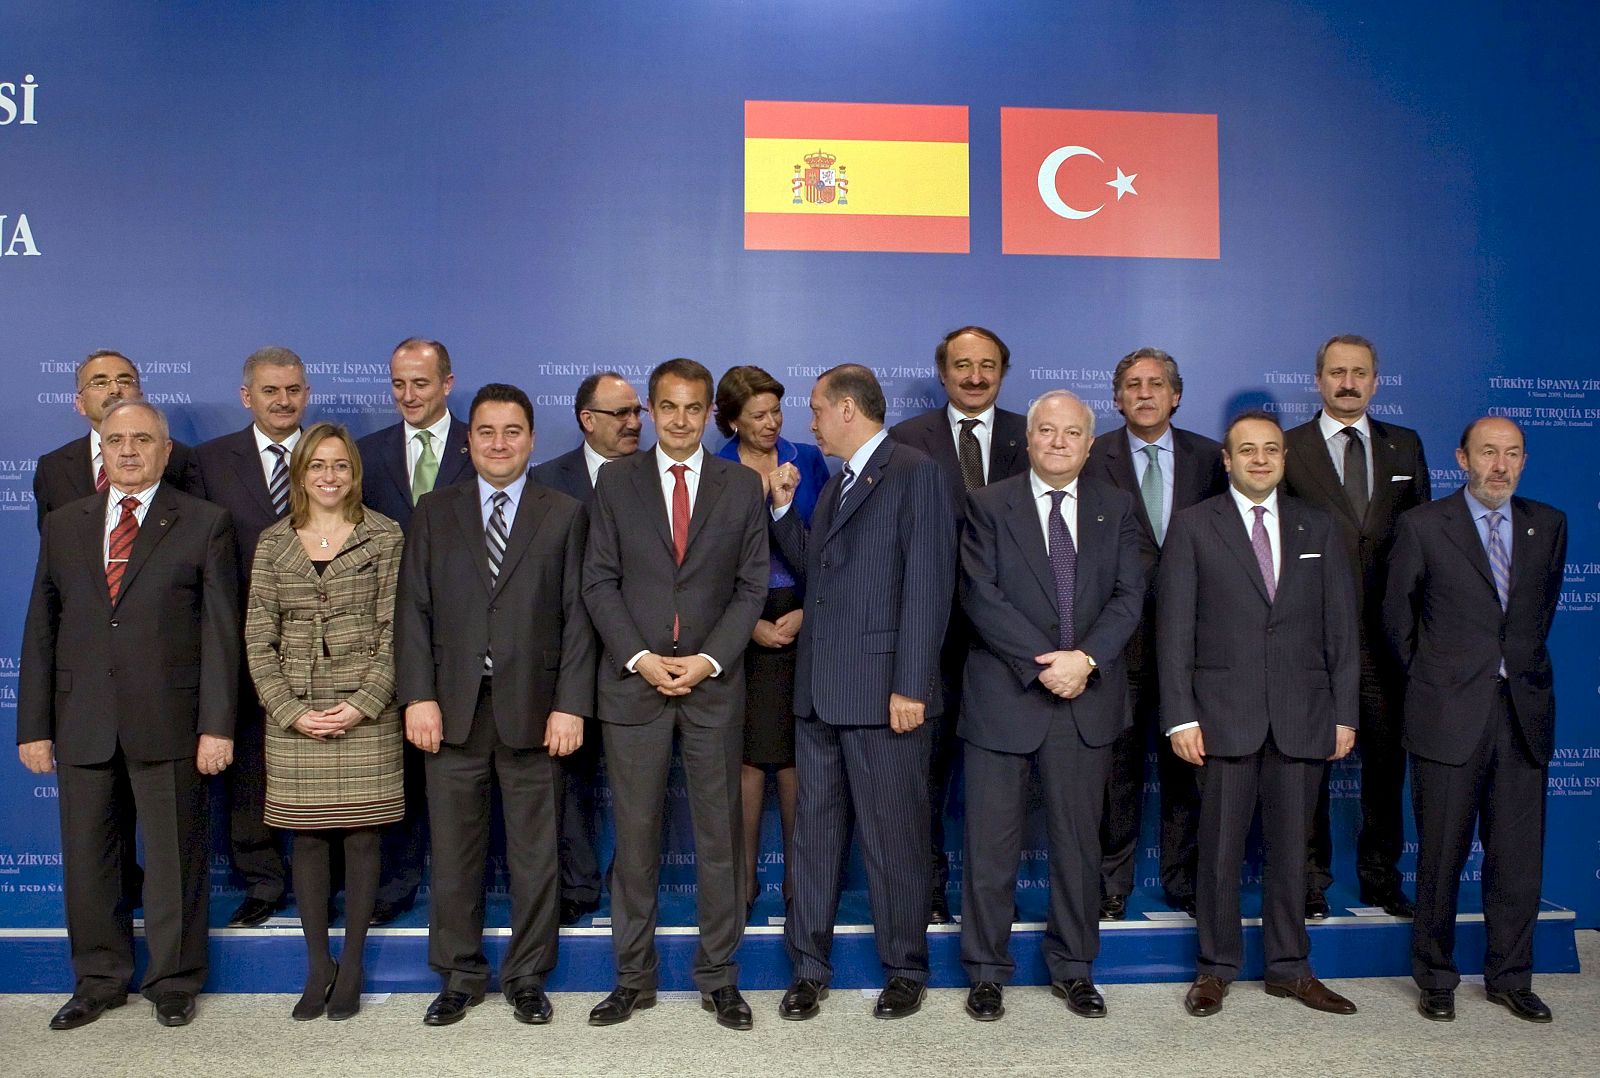 Foto de familia durante la cumbre entre España y Turquía, que han iniciado su primera reunión de alto nivel (RAN) (05/04/09).